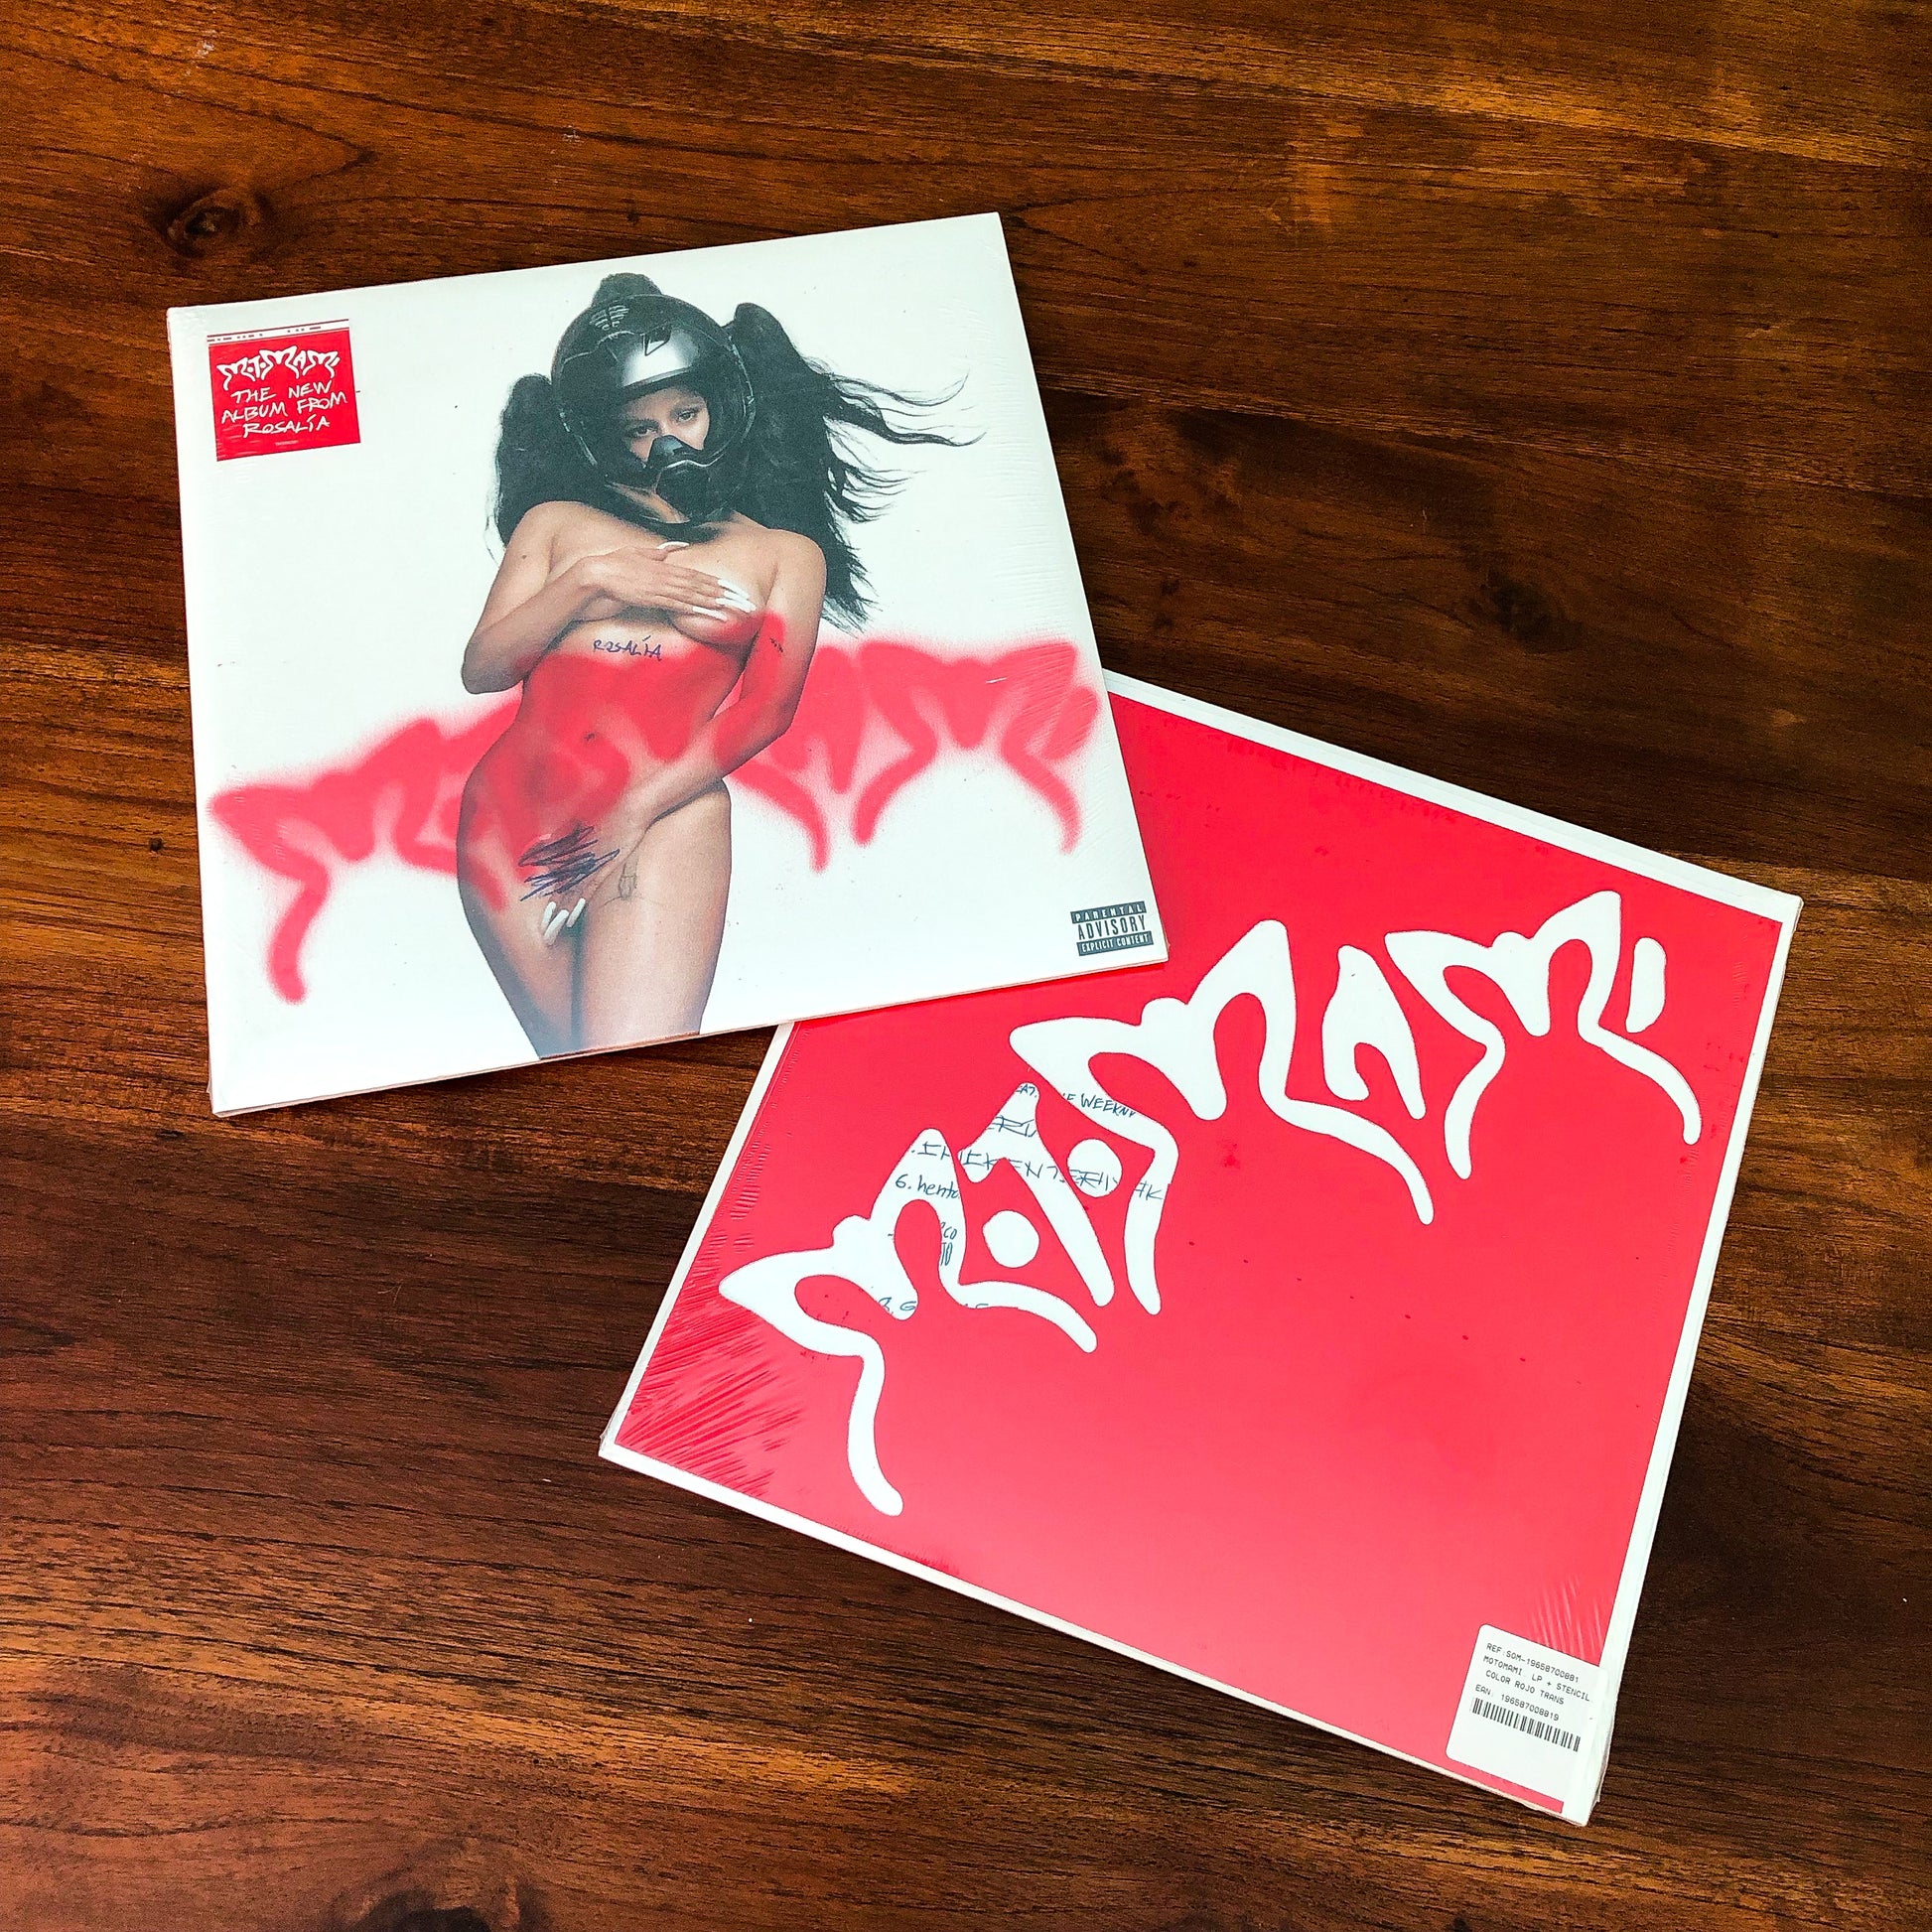 Rosalía MOTOMAMI Red Vinyl - Music